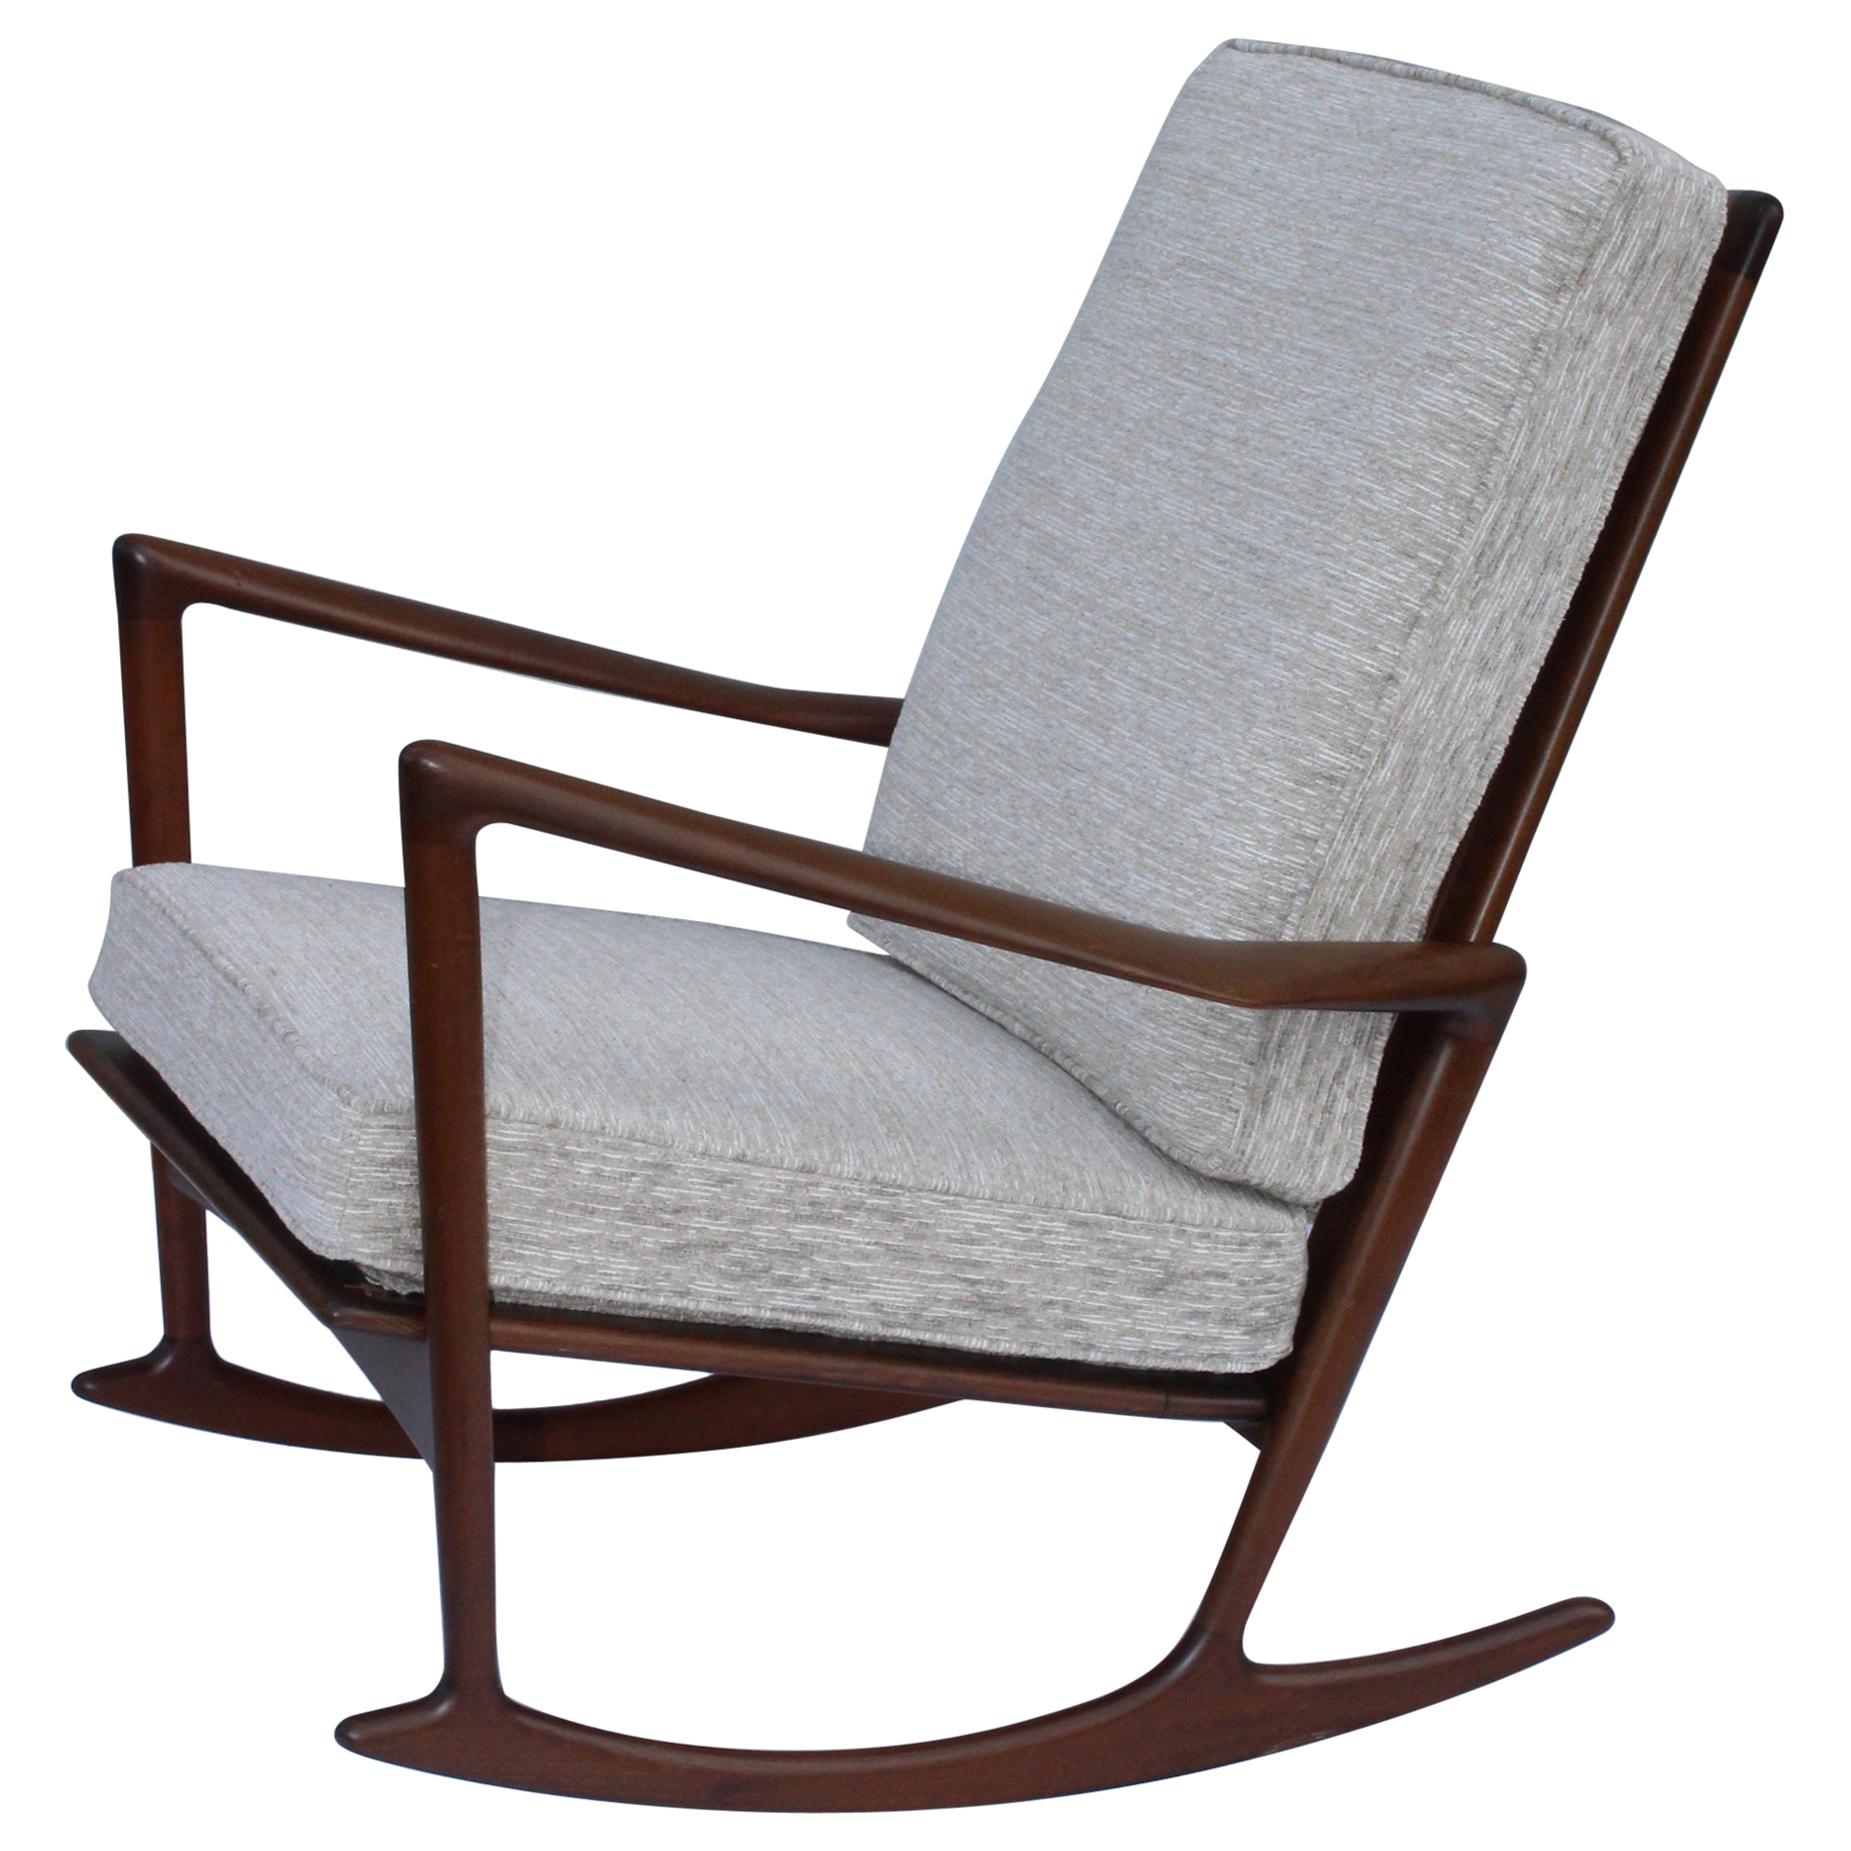 IB Kofod-Larsen Sculptural Rocking Chair